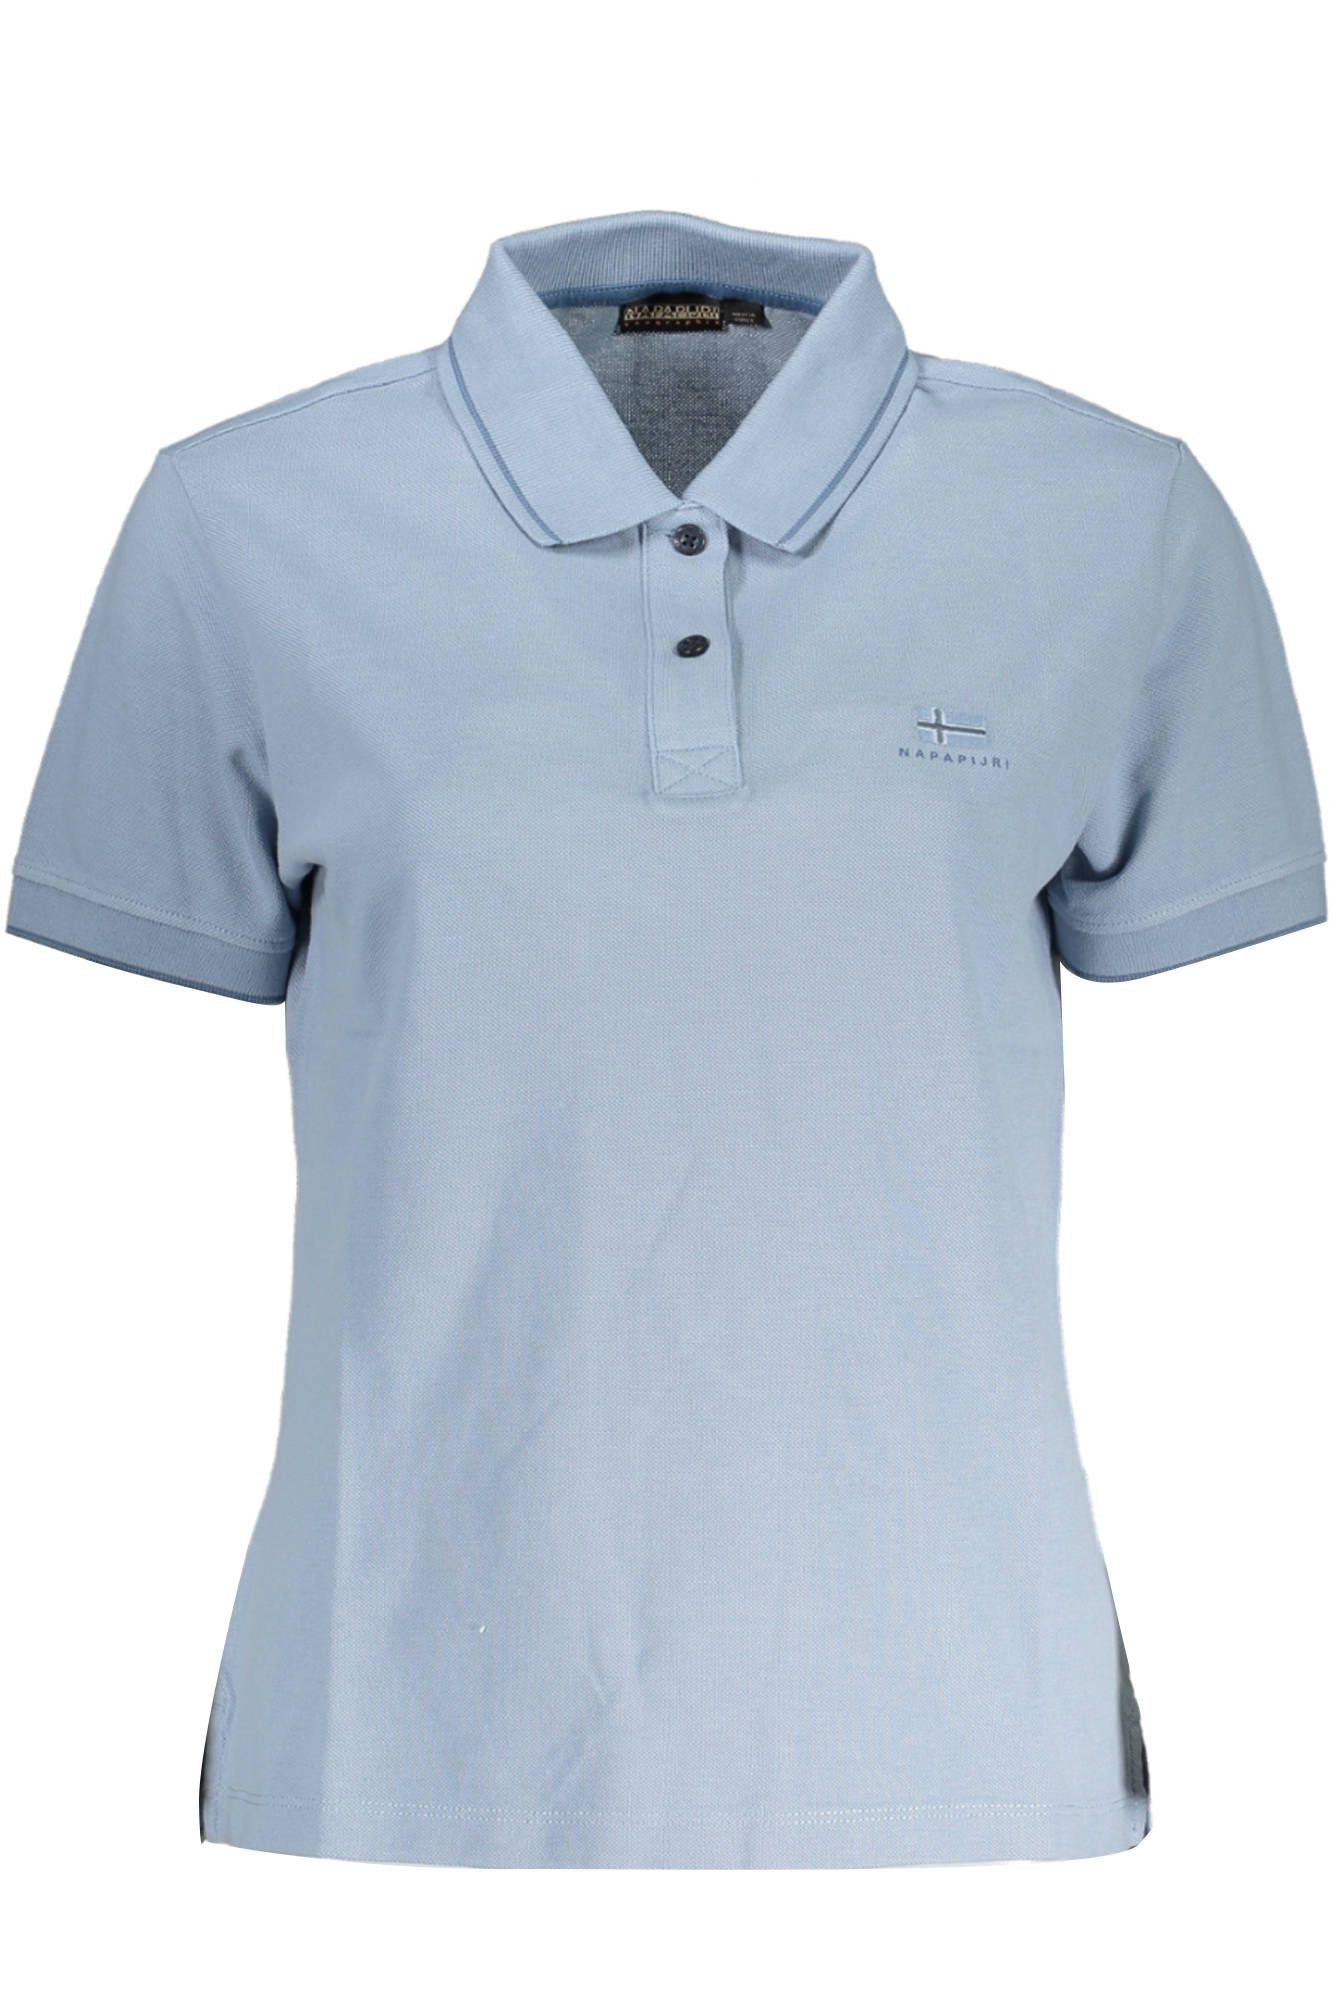 Napapijri  Light Blue Cotton Polo Shirt